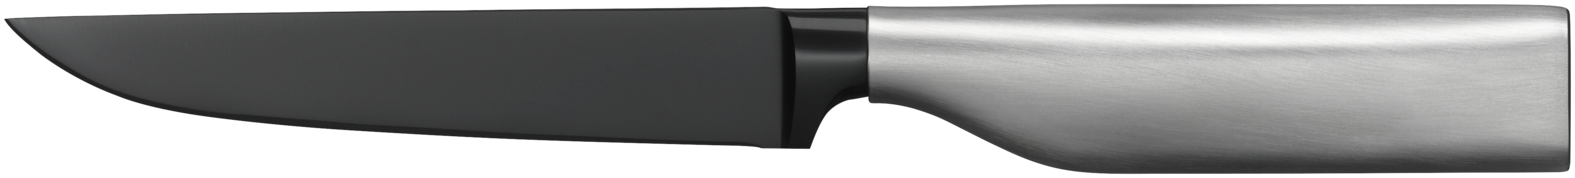 Универсальный нож Ultimate Black 12 см универсальный рассухариватель автоdело